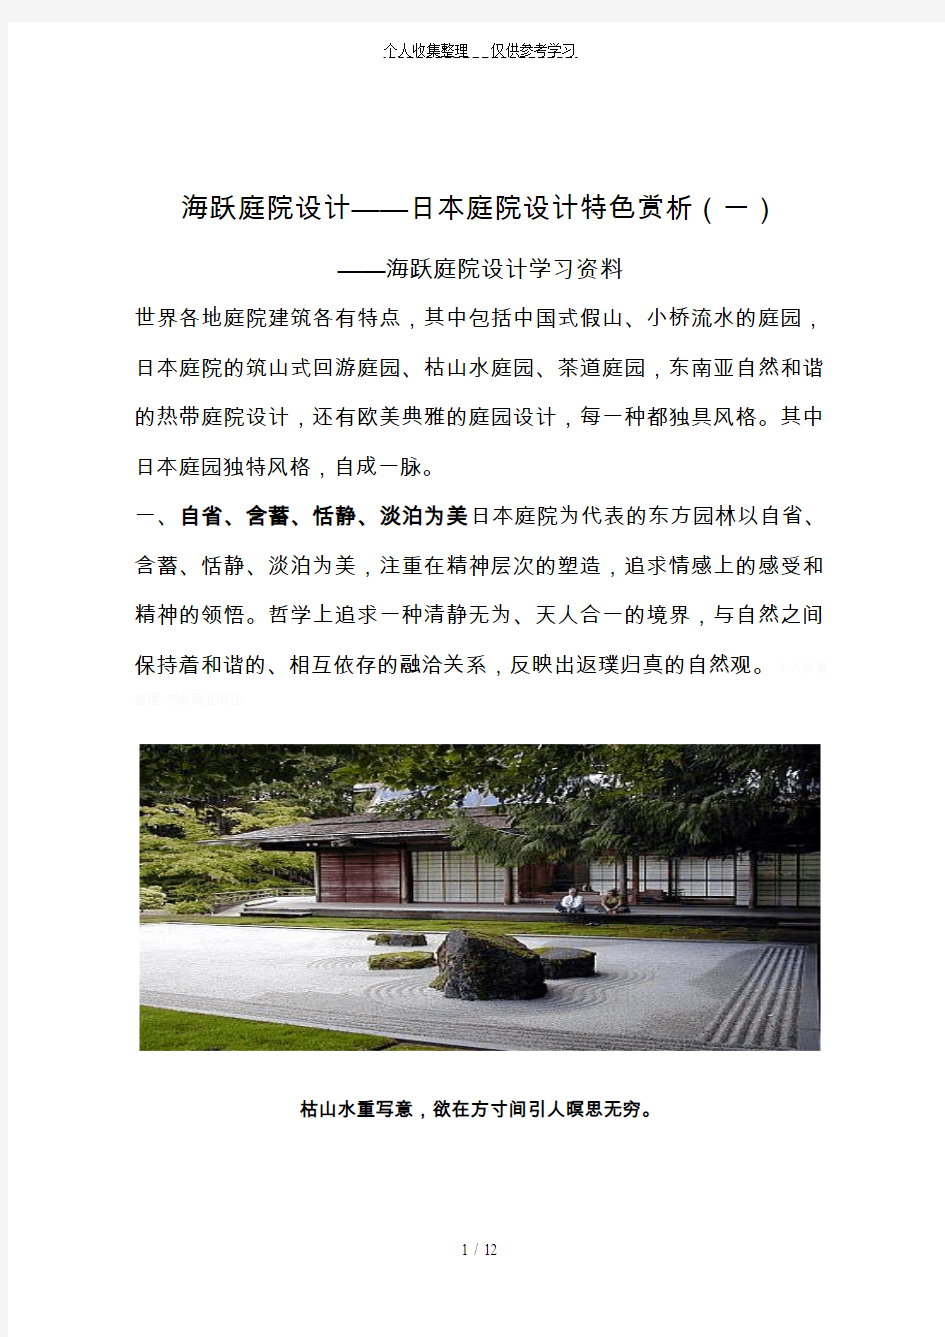 海跃庭院设计——日本庭院设计特色赏析(一)